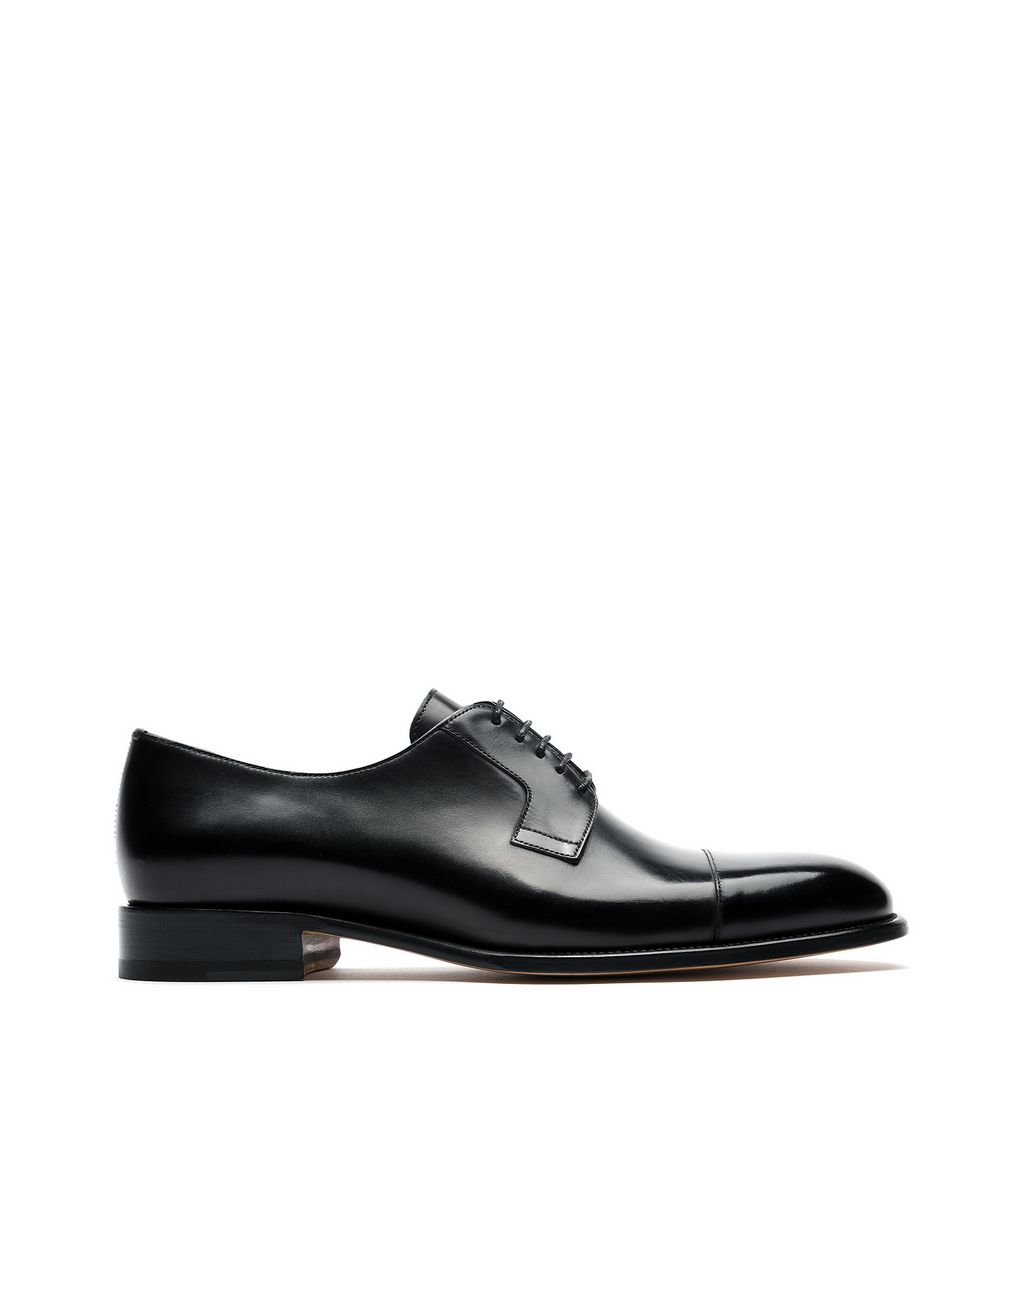 Brioni Men's Formal Shoes | Brioni Official Online Store